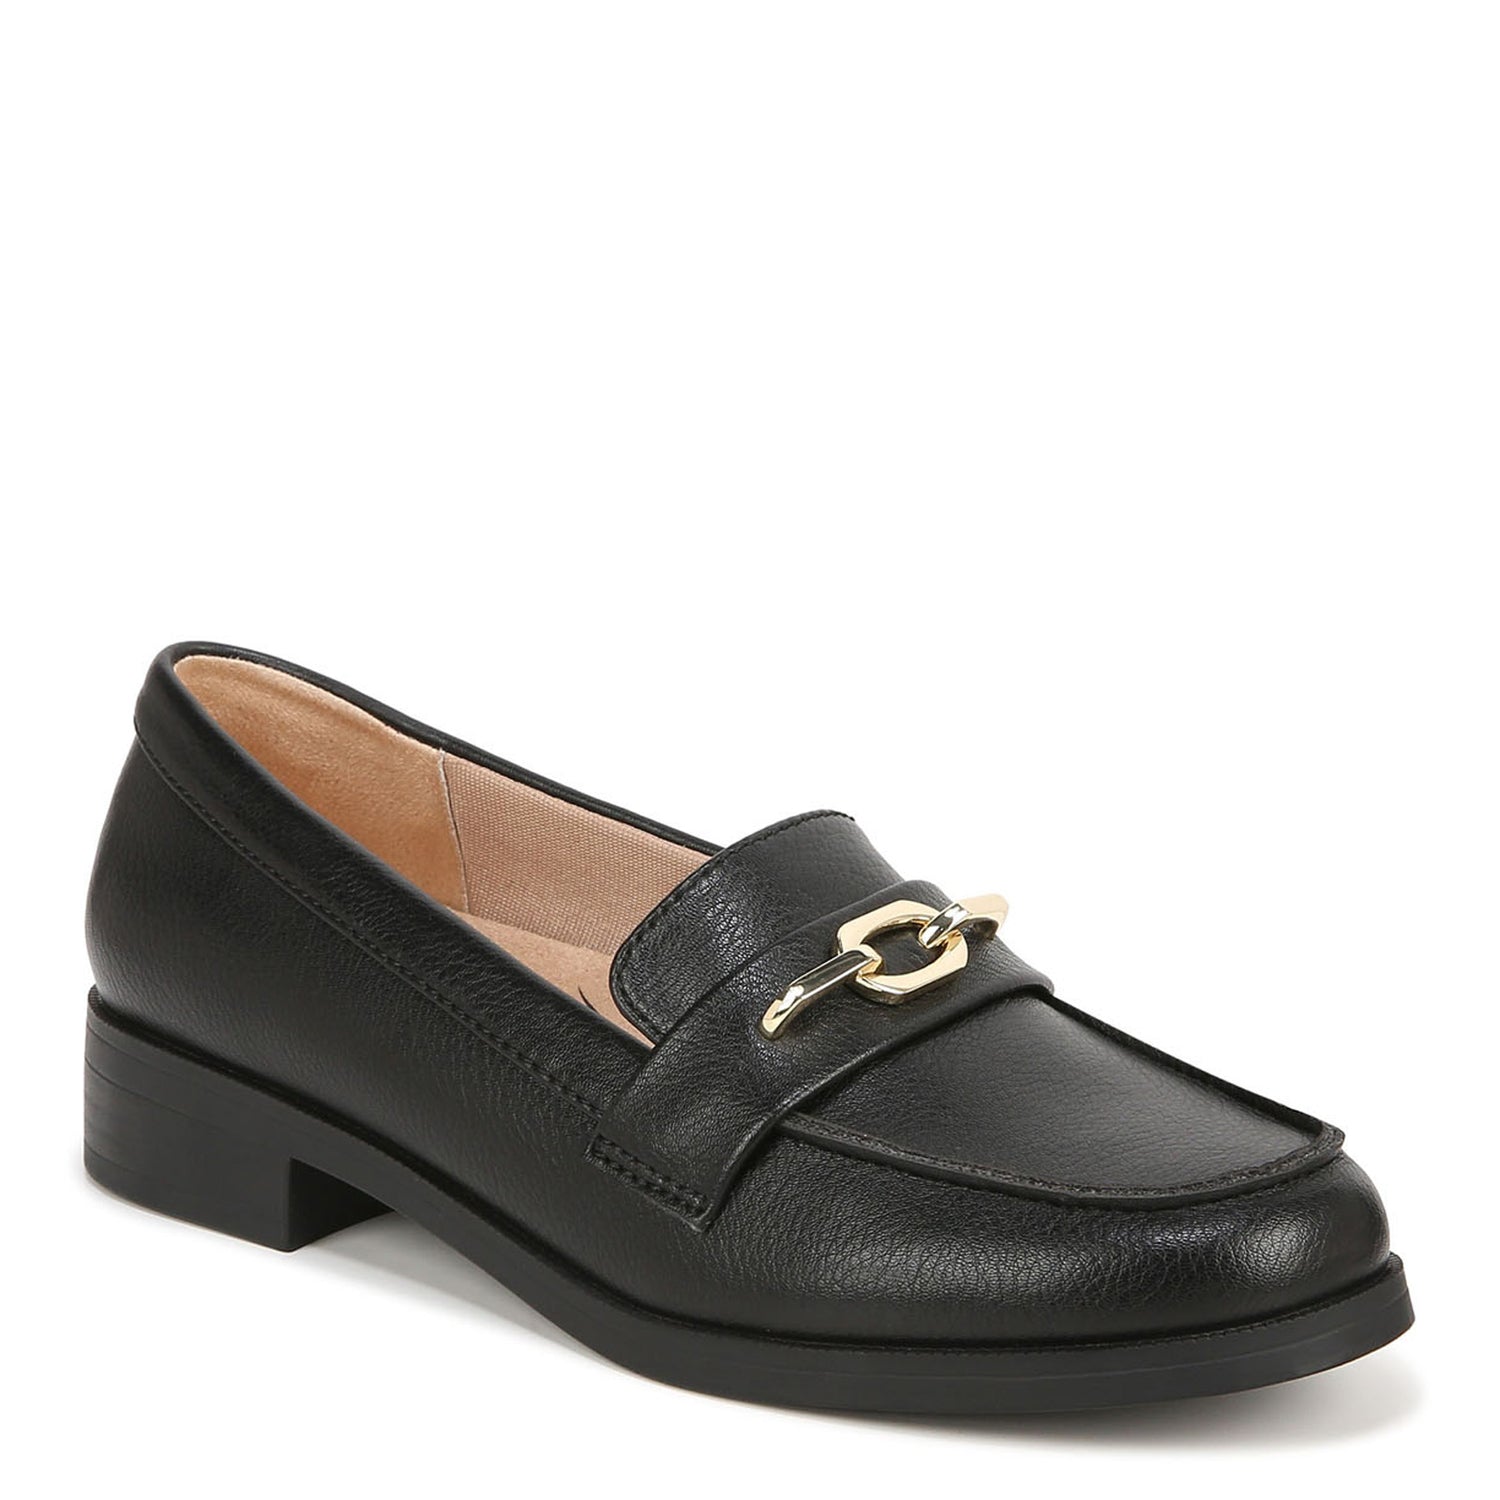 Peltz Shoes  Women's LifeStride Sonoma Loafer BLACK I6576S1001